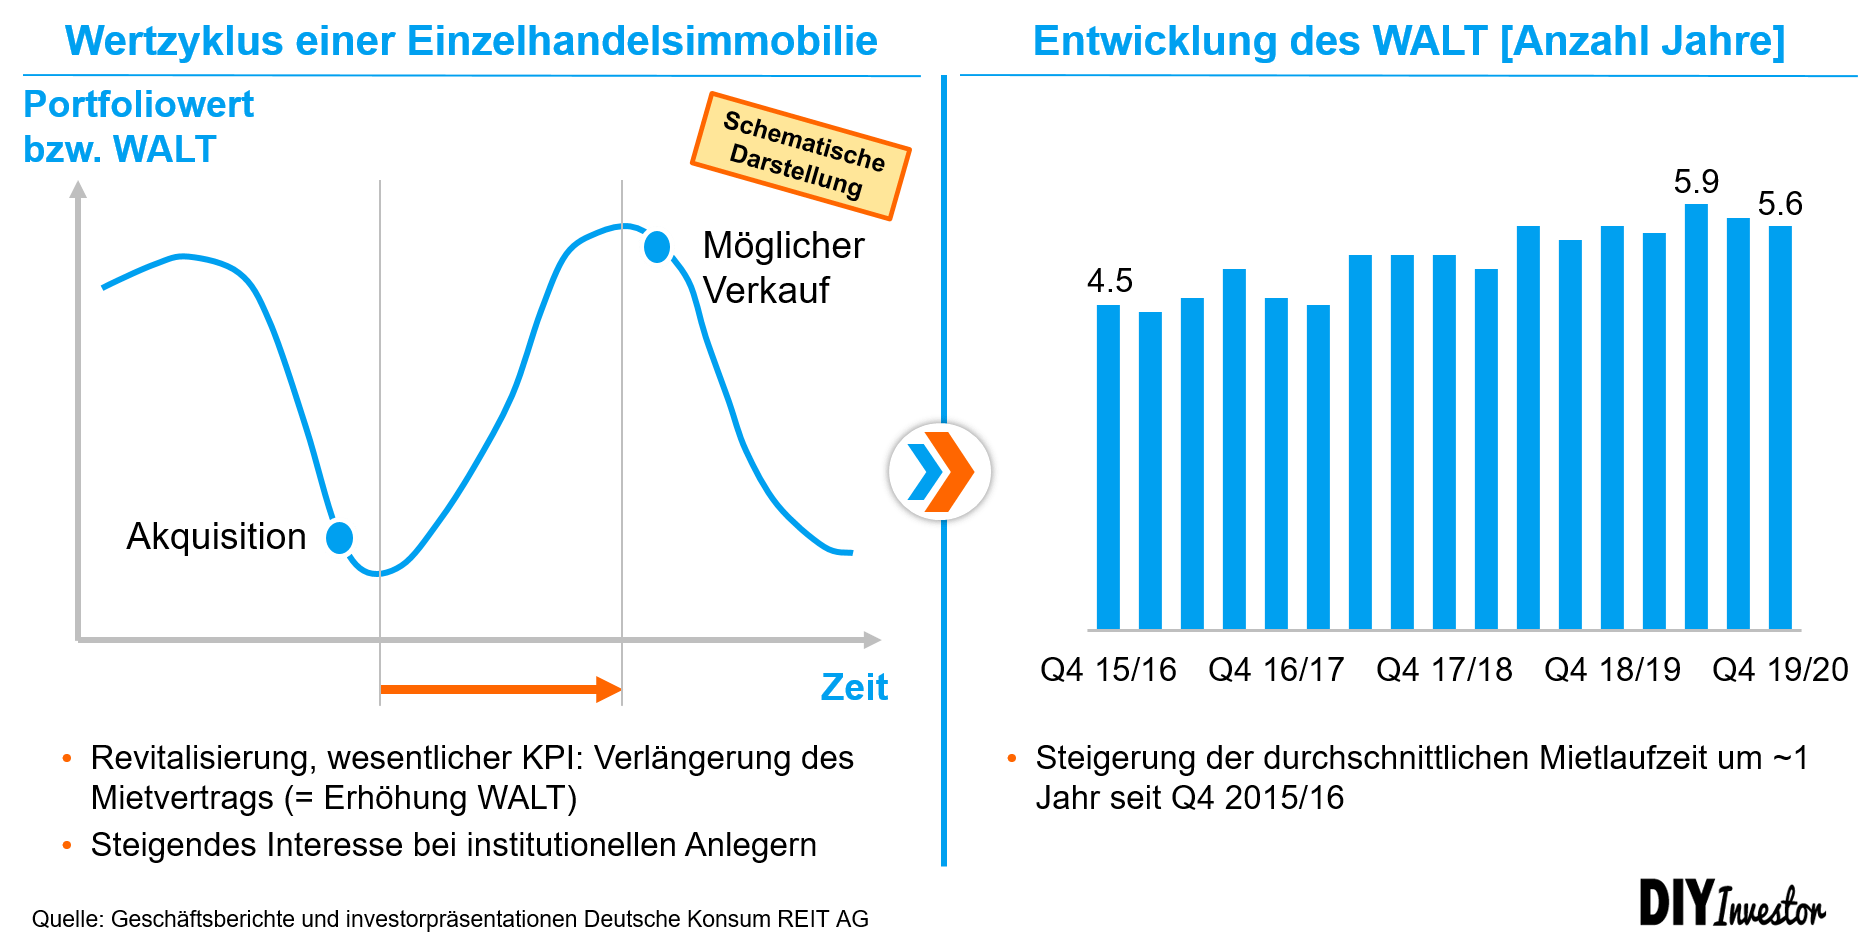 Deutsche Konsum REIT - Entwicklung WALT